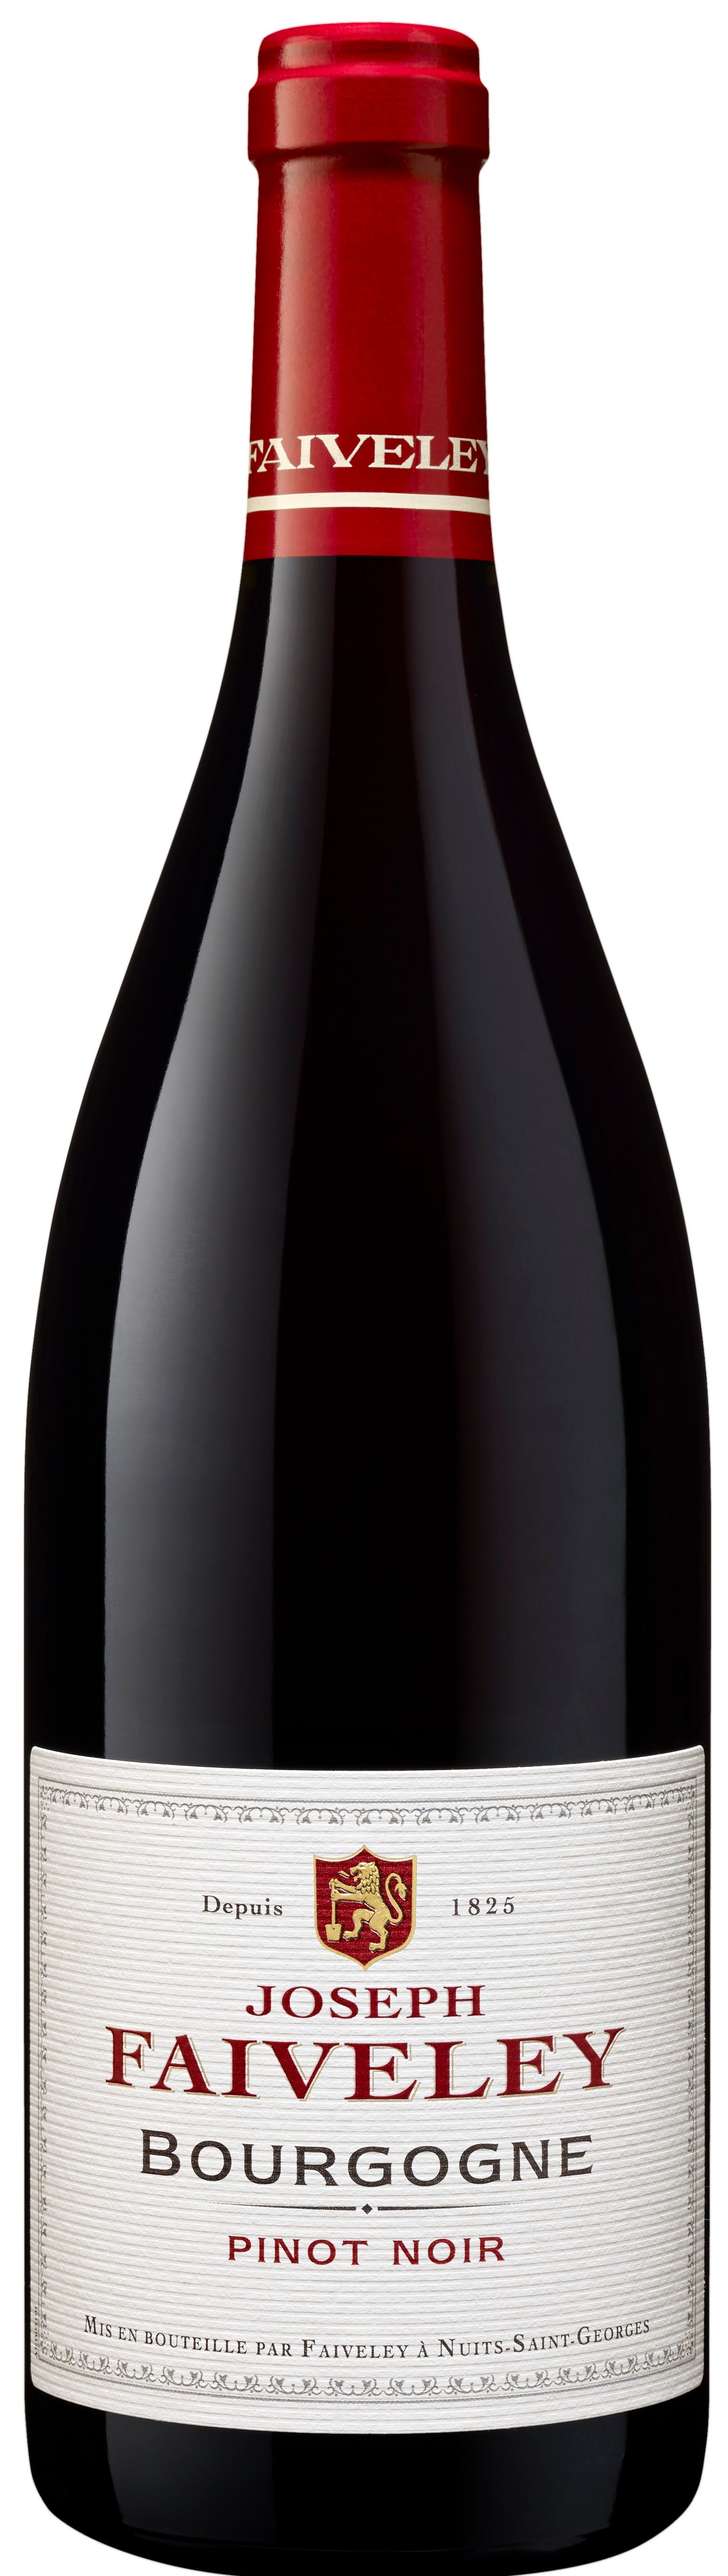 Bourgogne Pinot Noir Joseph Faiveley